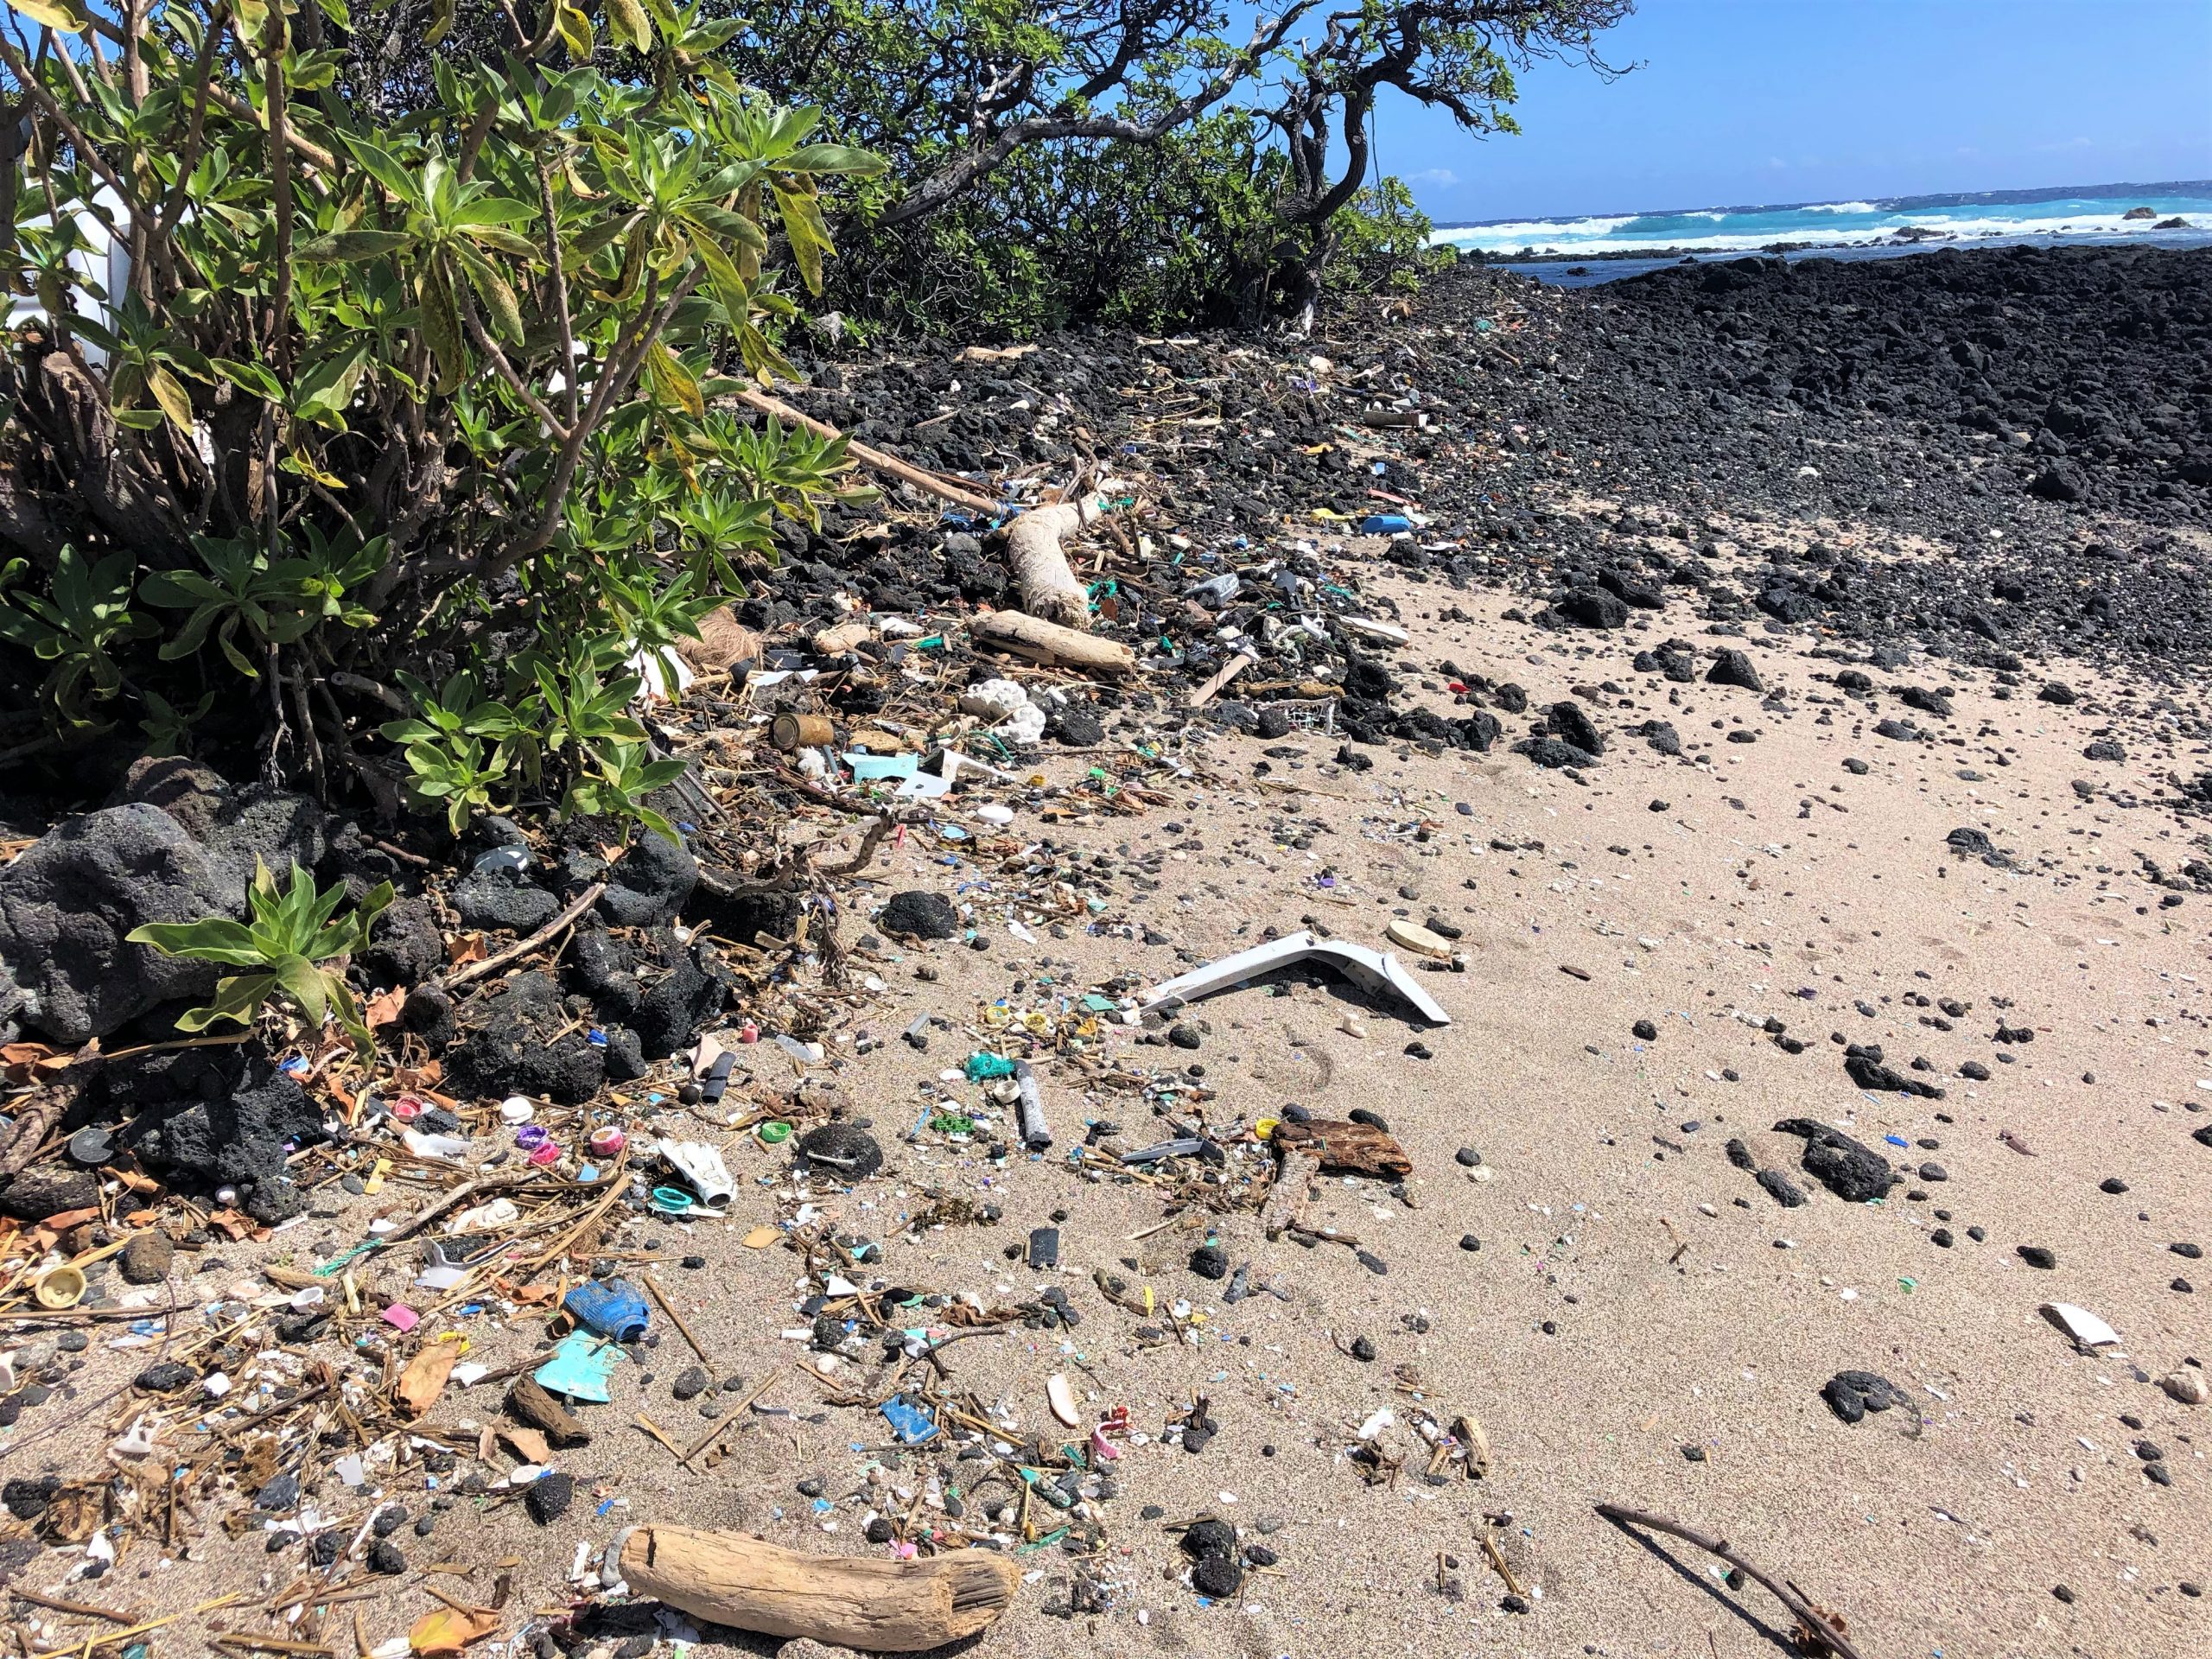 Bits of broken plastic littering the shoreline.